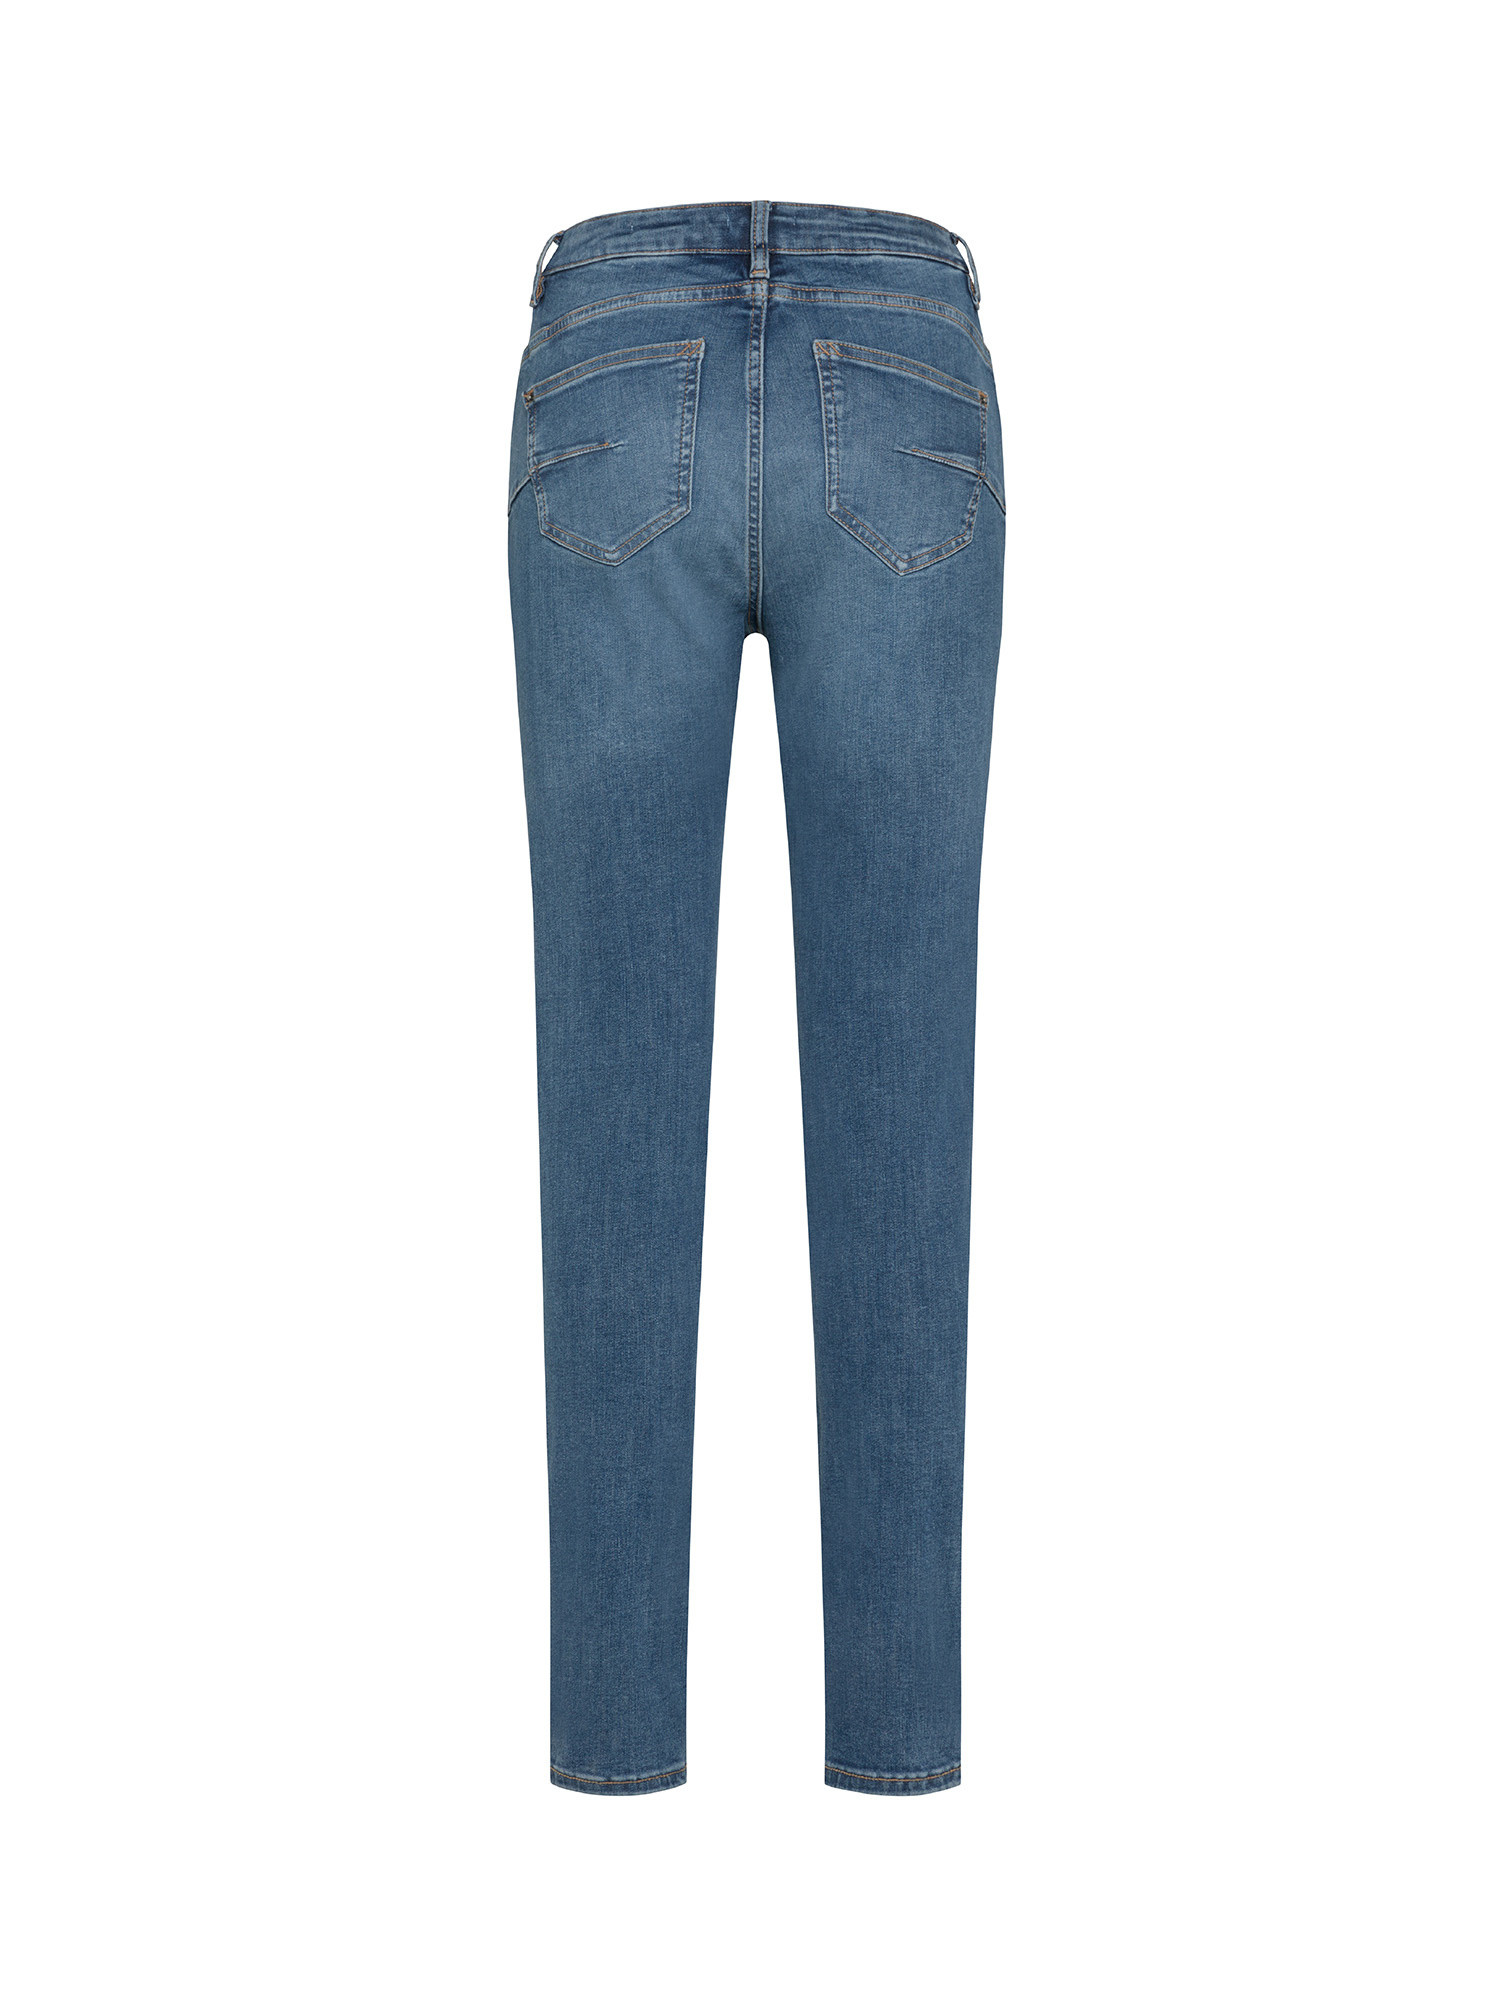 Esprit - Five pocket skinny jeans, Denim, large image number 1